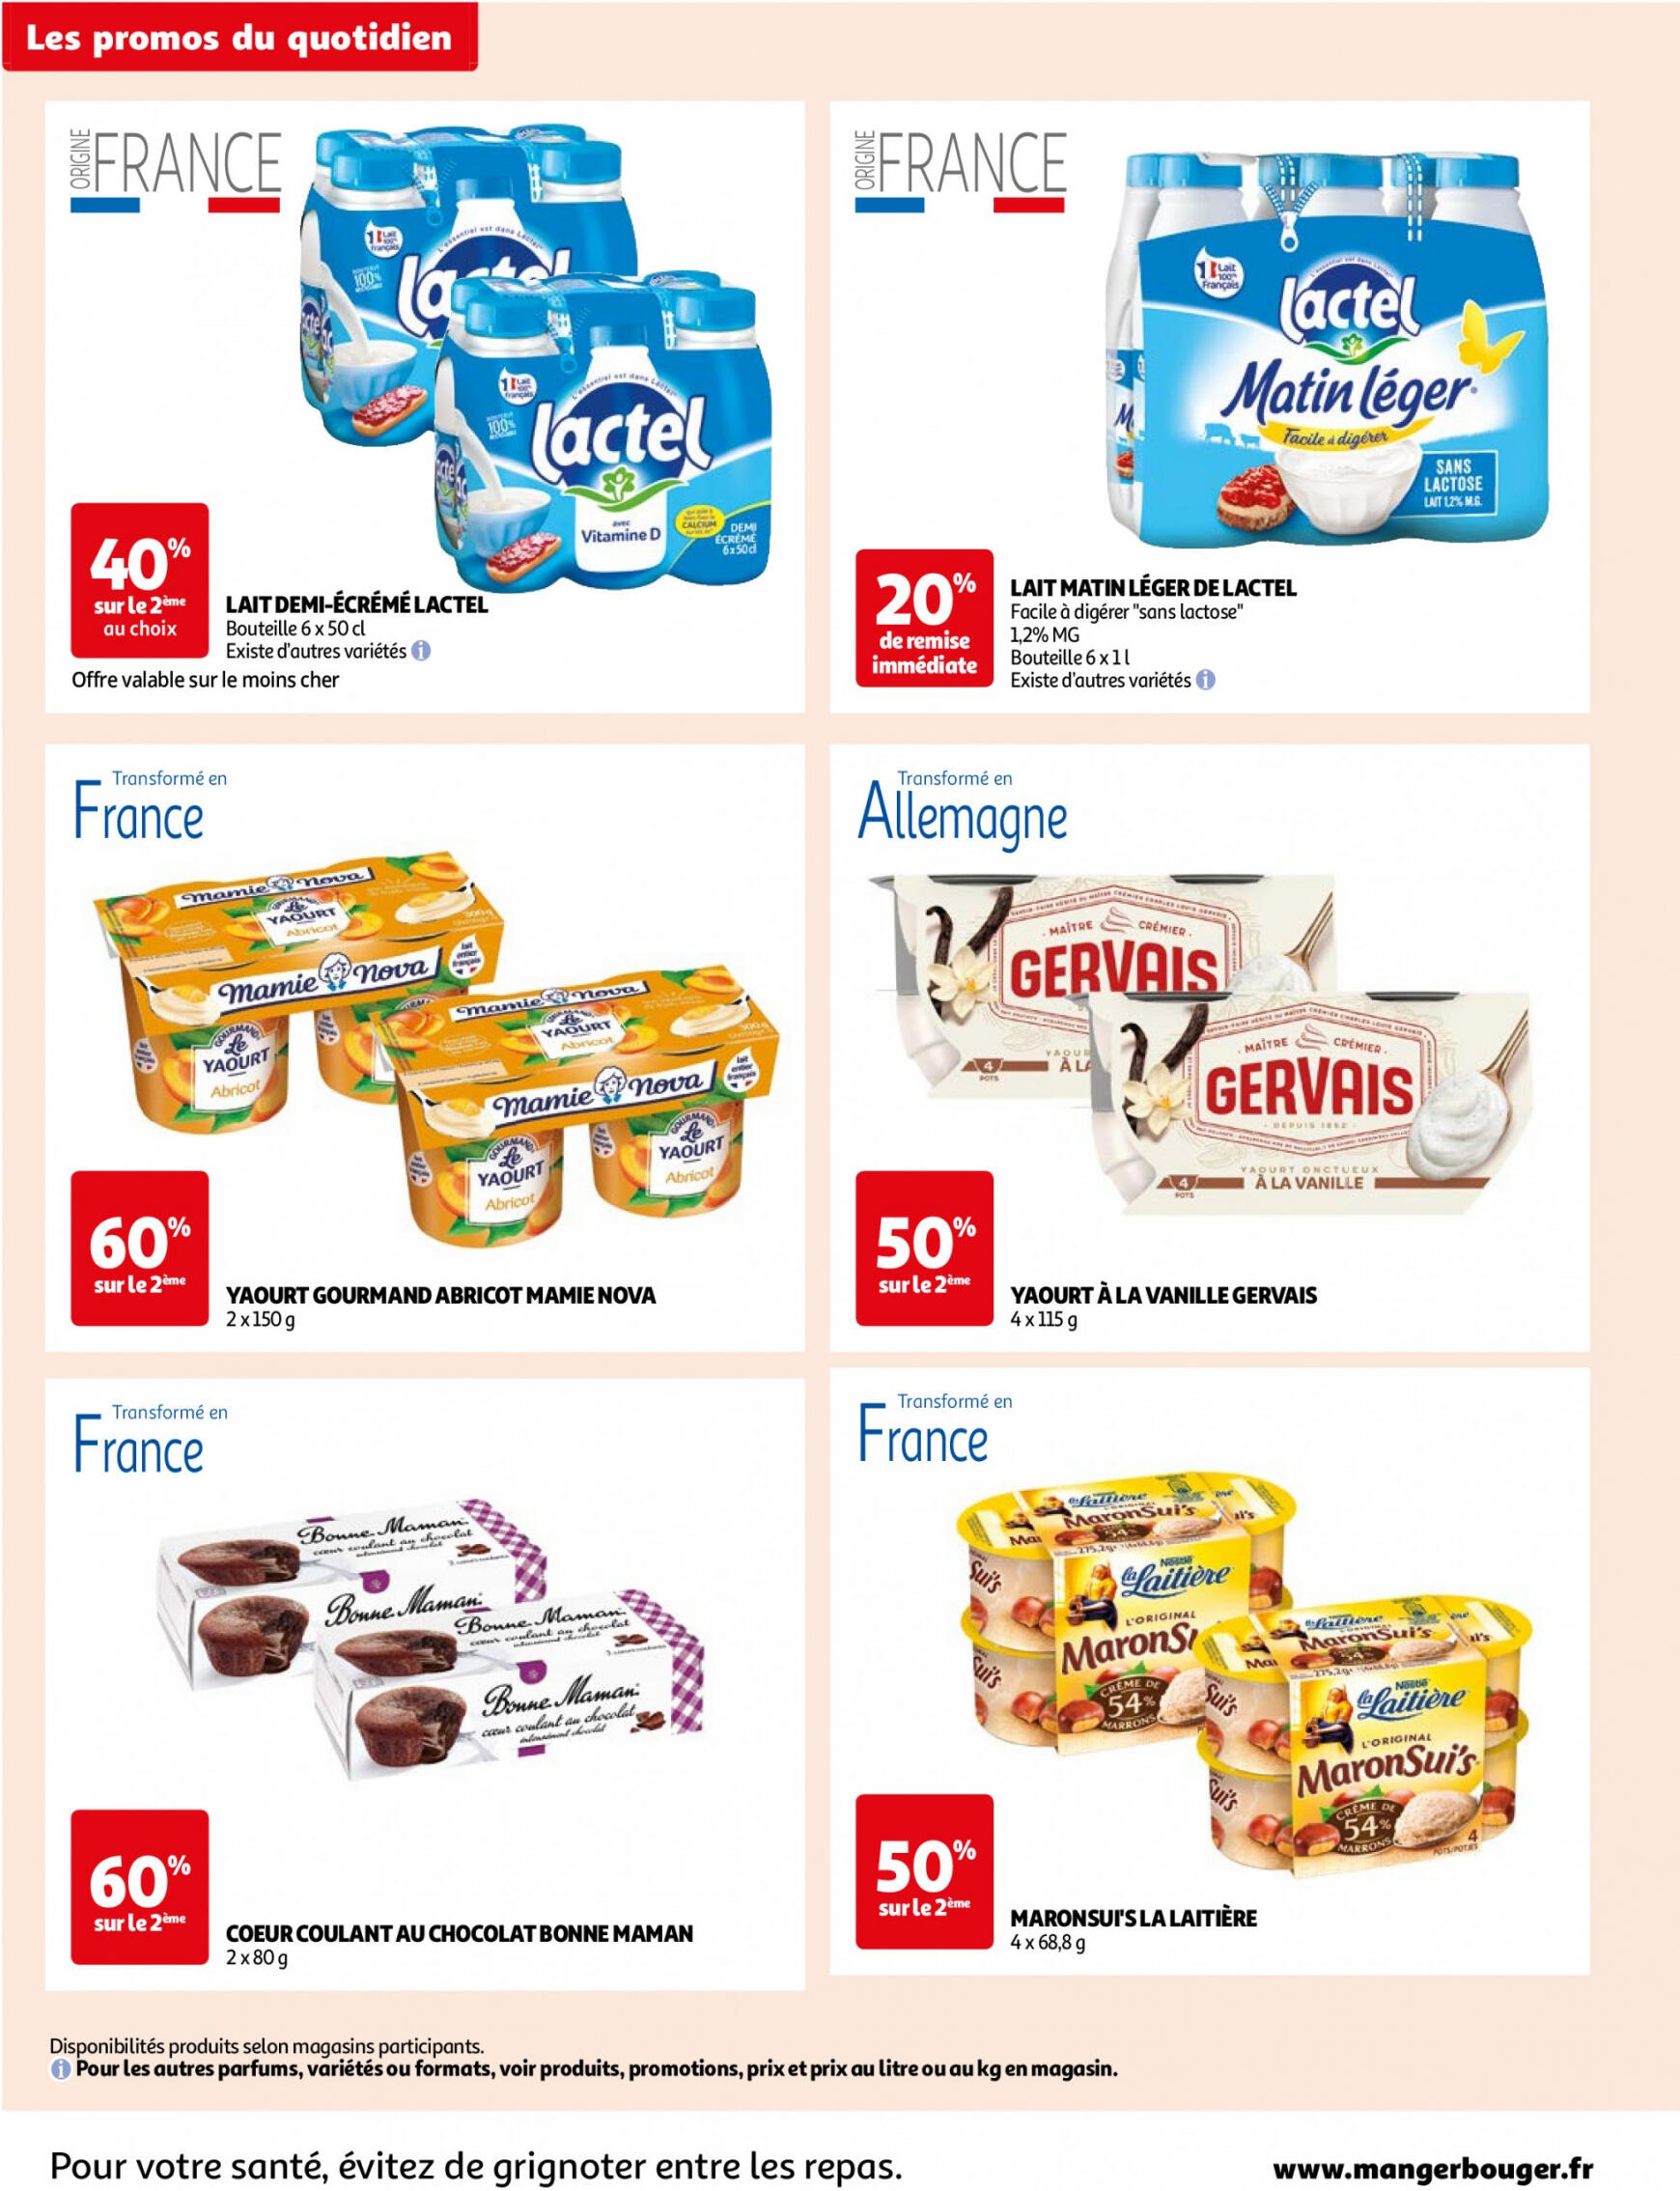 auchan - Prospectus Auchan Supermarché - Des économies au quotidien dans votre super actuel 14.05. - 02.06. - page: 6